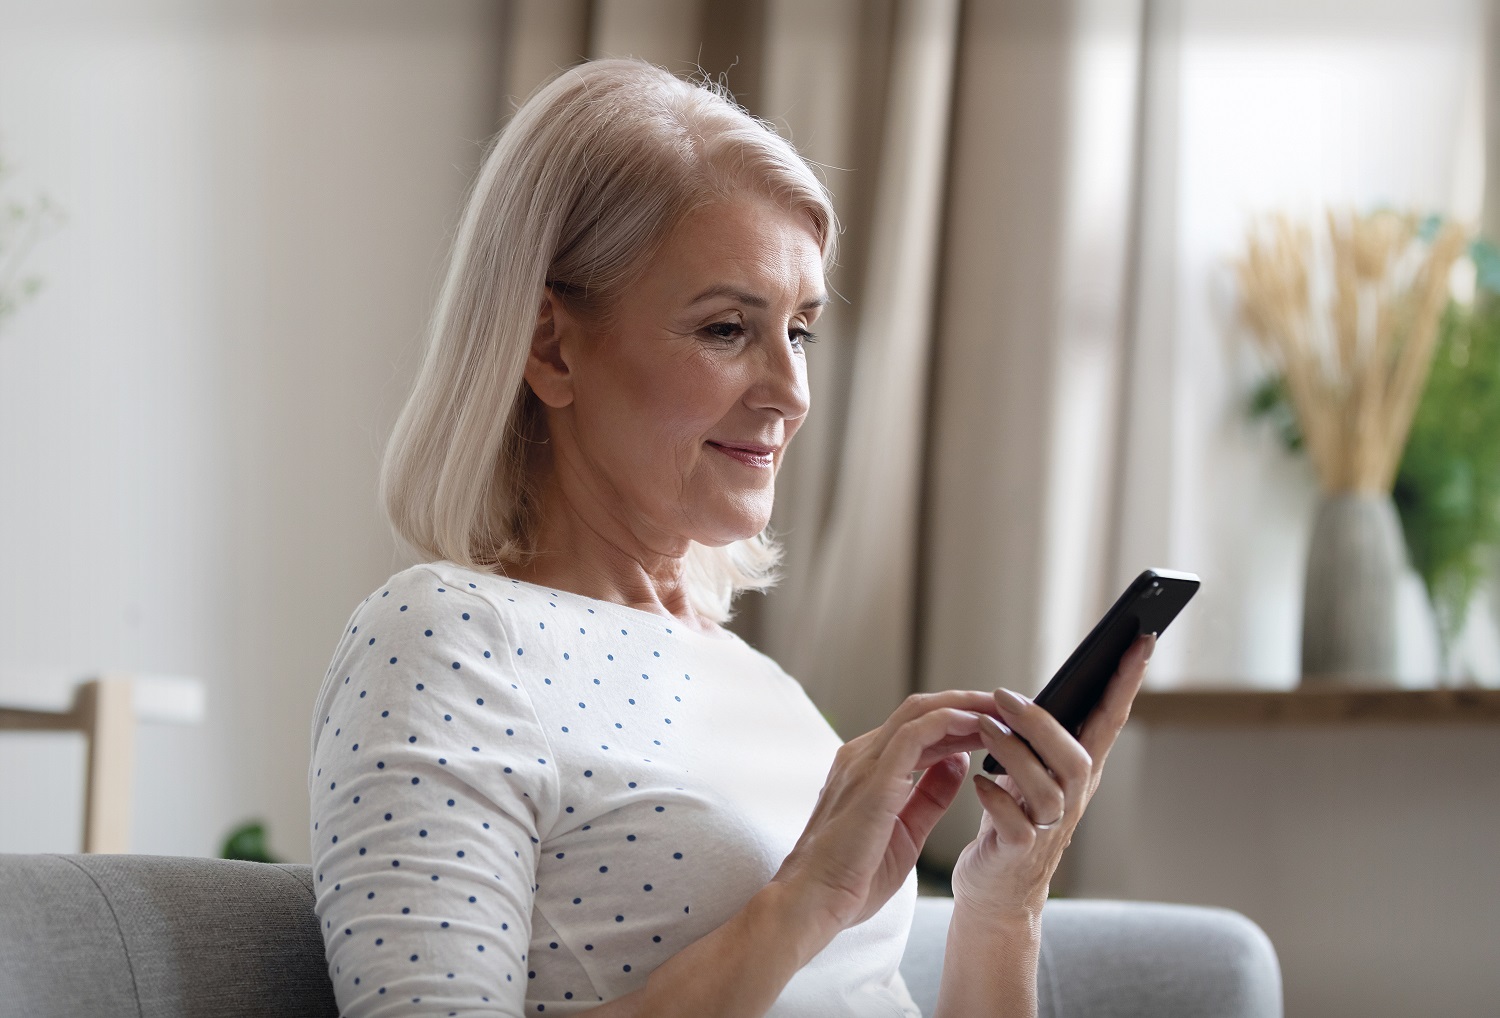 IMQ Igurco pone en marcha una aplicación móvil que permite a los familiares de personas mayores saber en tiempo real las actividades y estado de salud de sus parientes en residencias